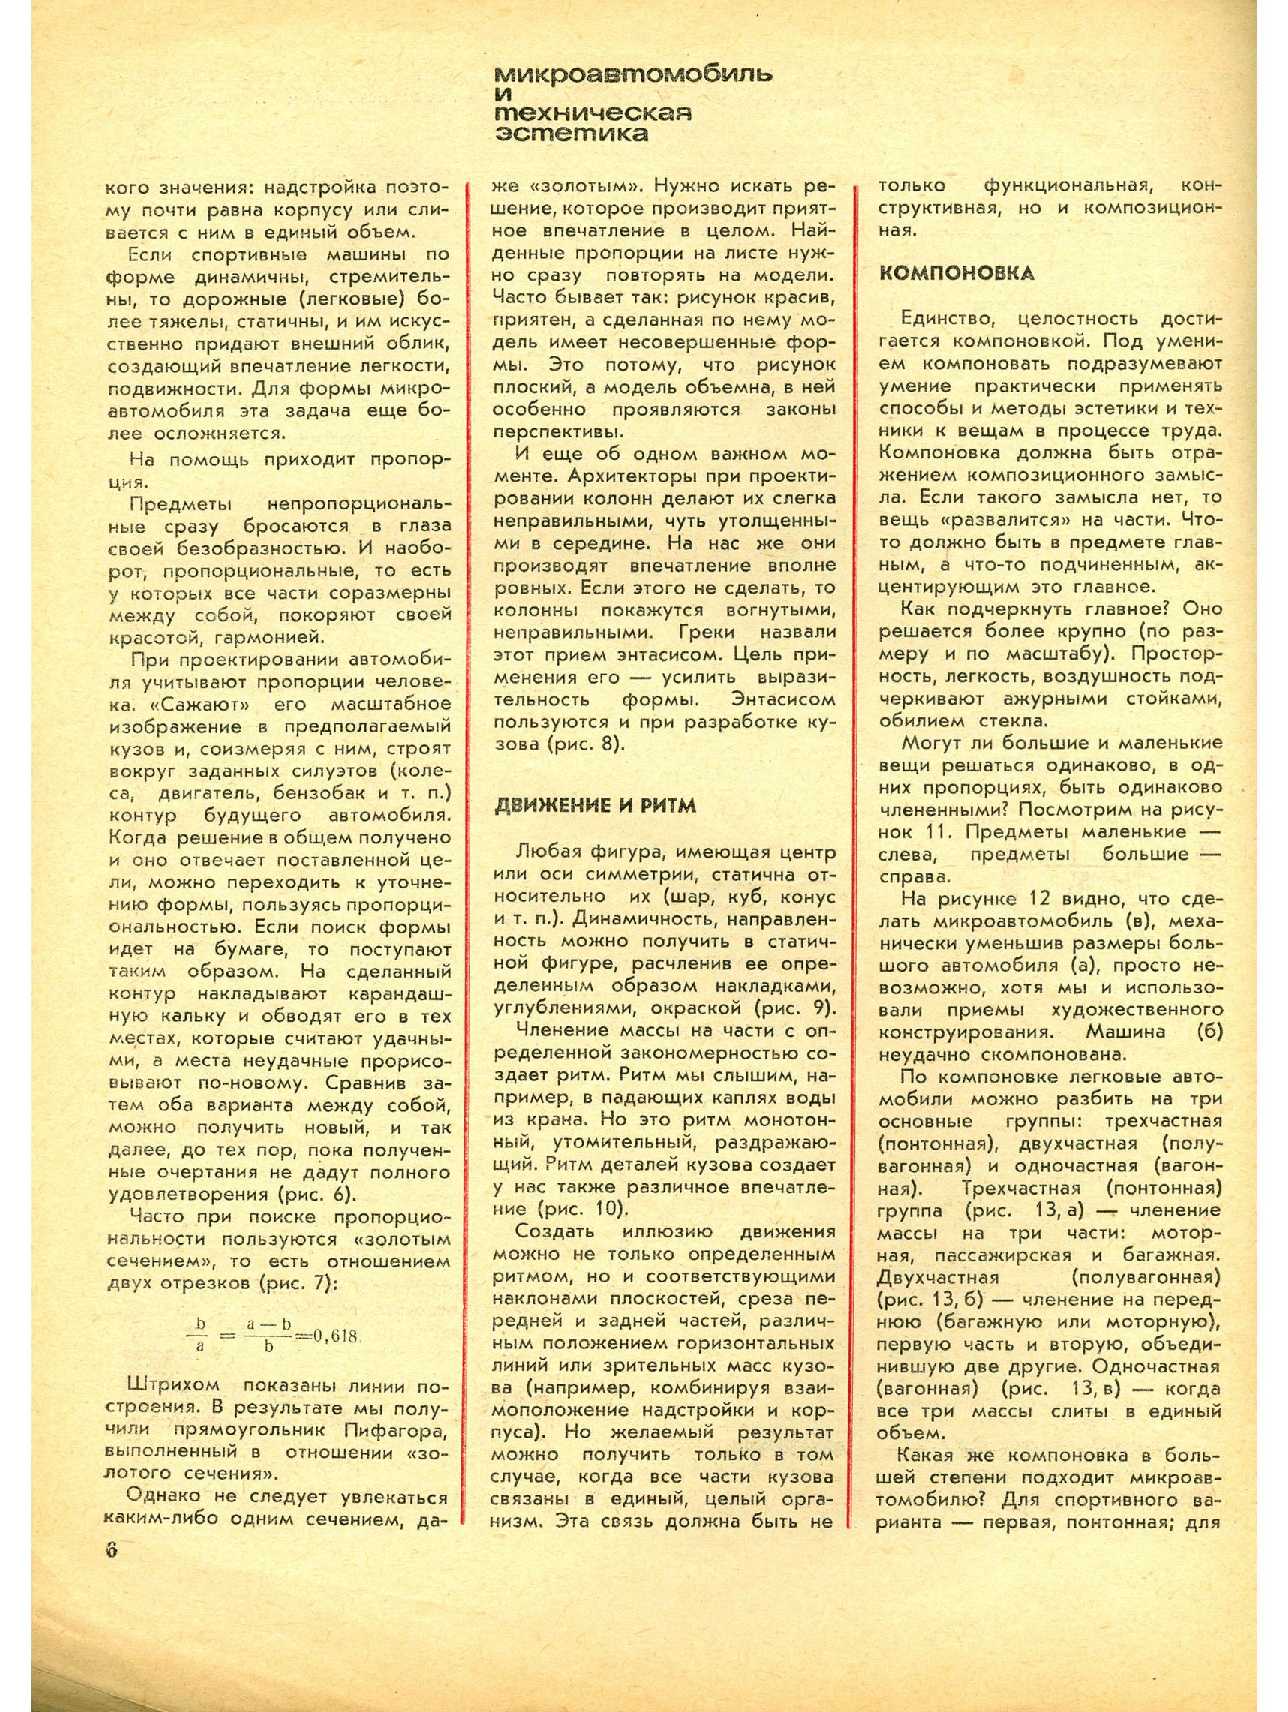 МК 7, 1966, 6 c.